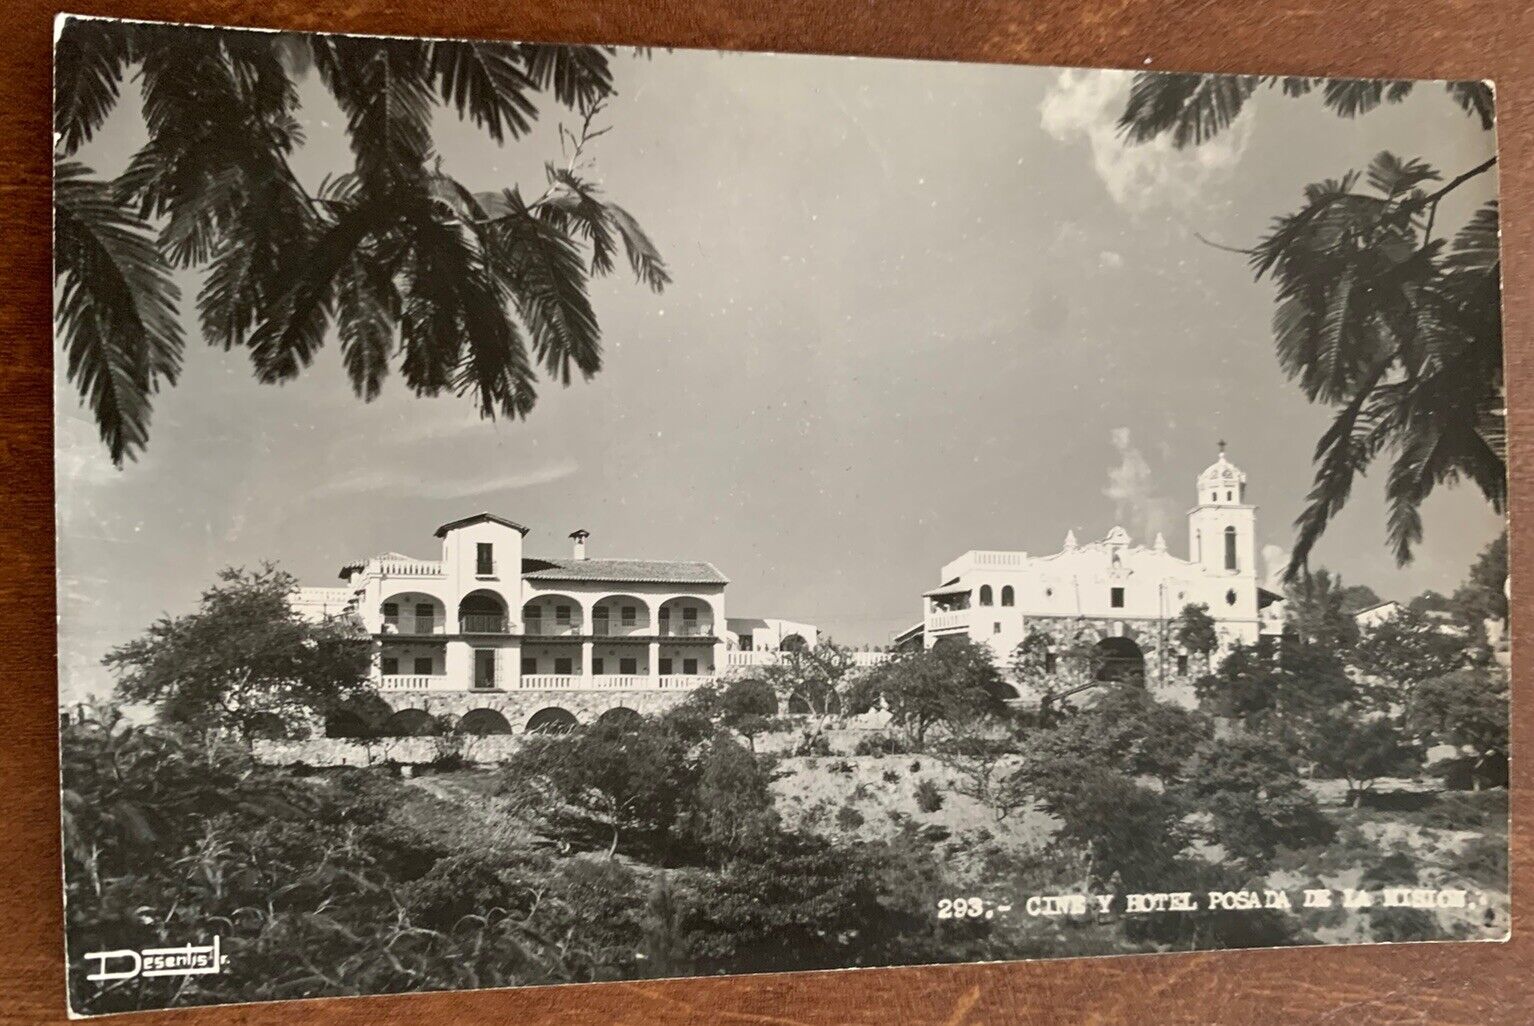 RPPC Photo Postcard Cine y Hotel Posada de la Mision Taxco Guerrero Mexico